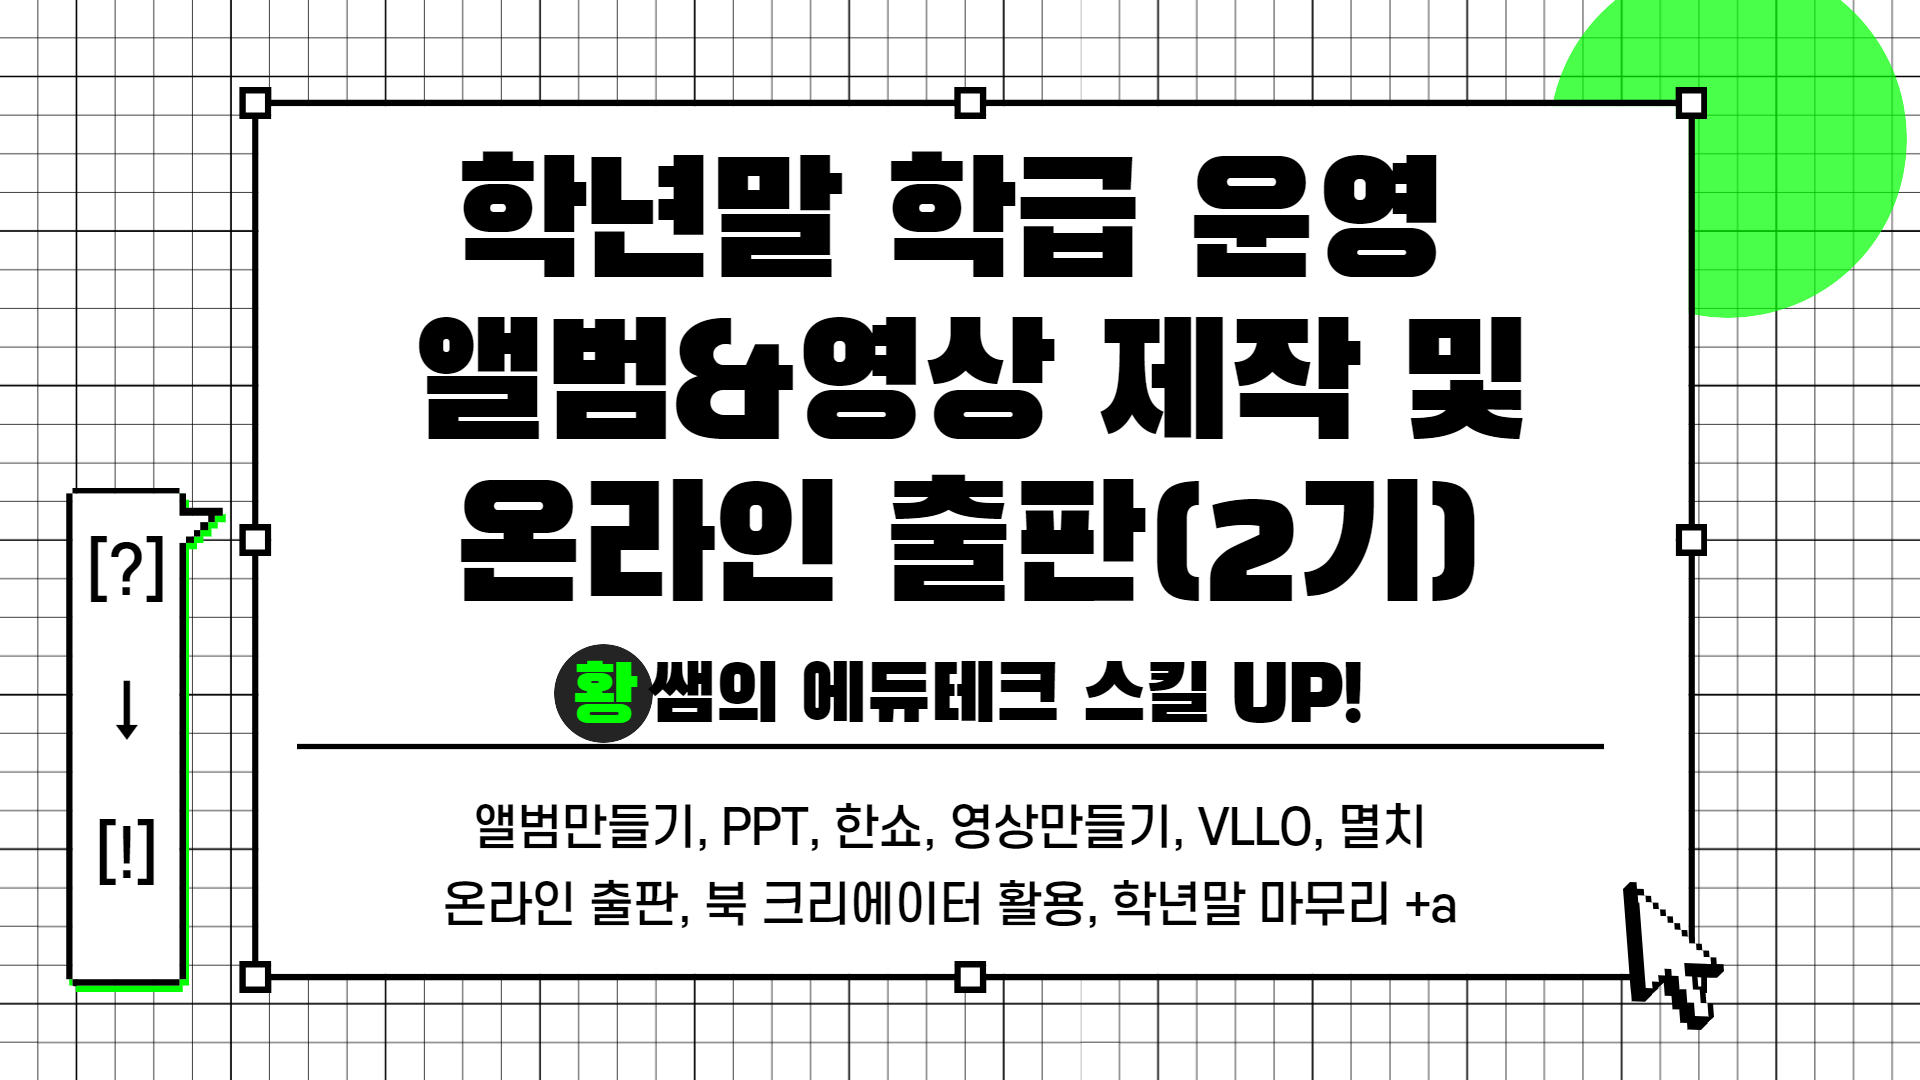 [?] → [!] 황쌤의 에듀테크 스킬 UP!(학급 운영 앨범&영상 제작 및 온라인 출판(2기))